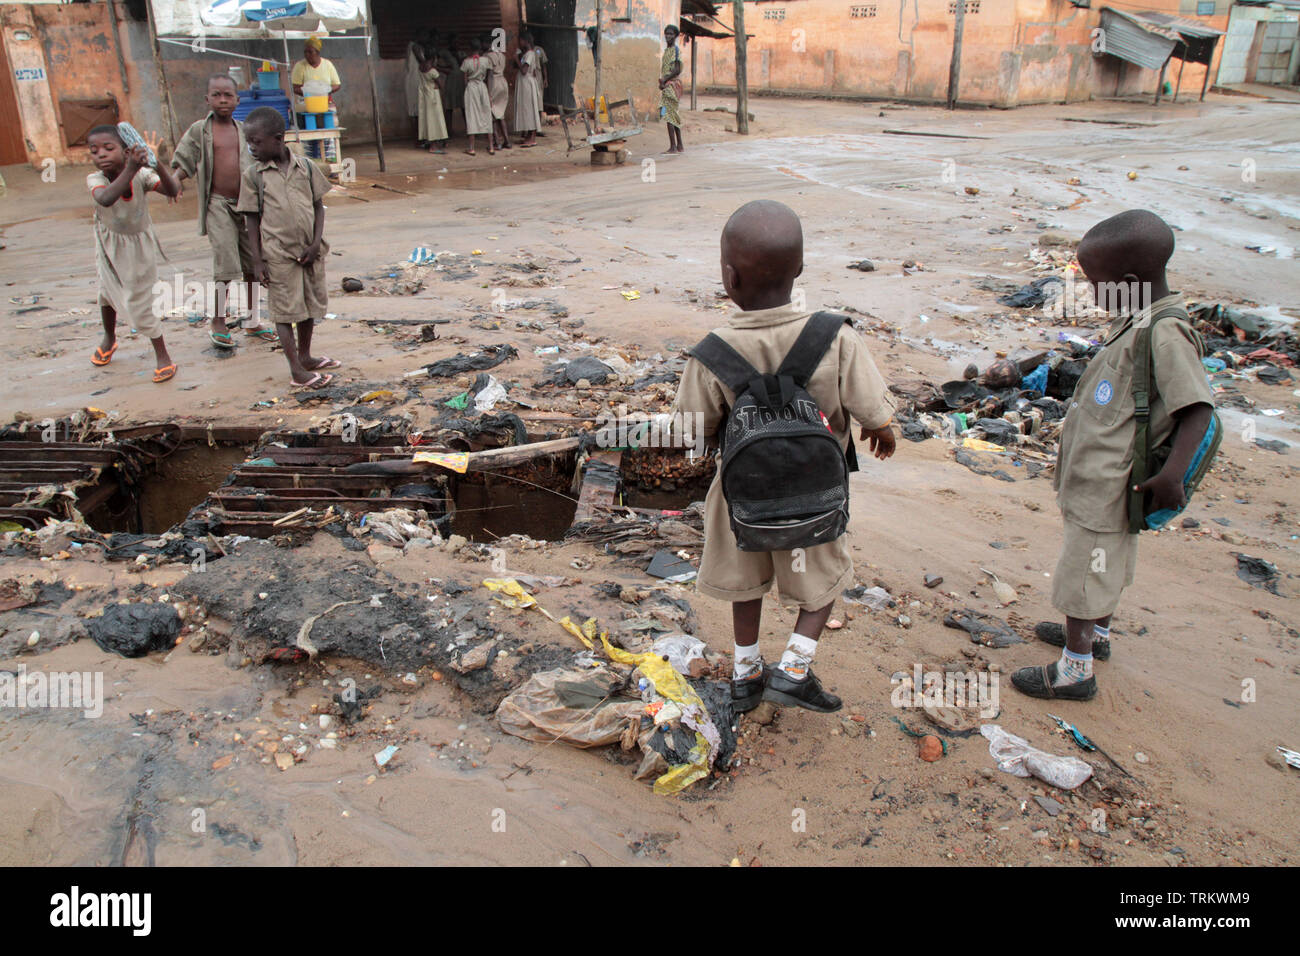 Écoulement dans une voirie d'un quartier pauvre. Lomé. Togo. Afrique de l'Ouest. Stock Photo